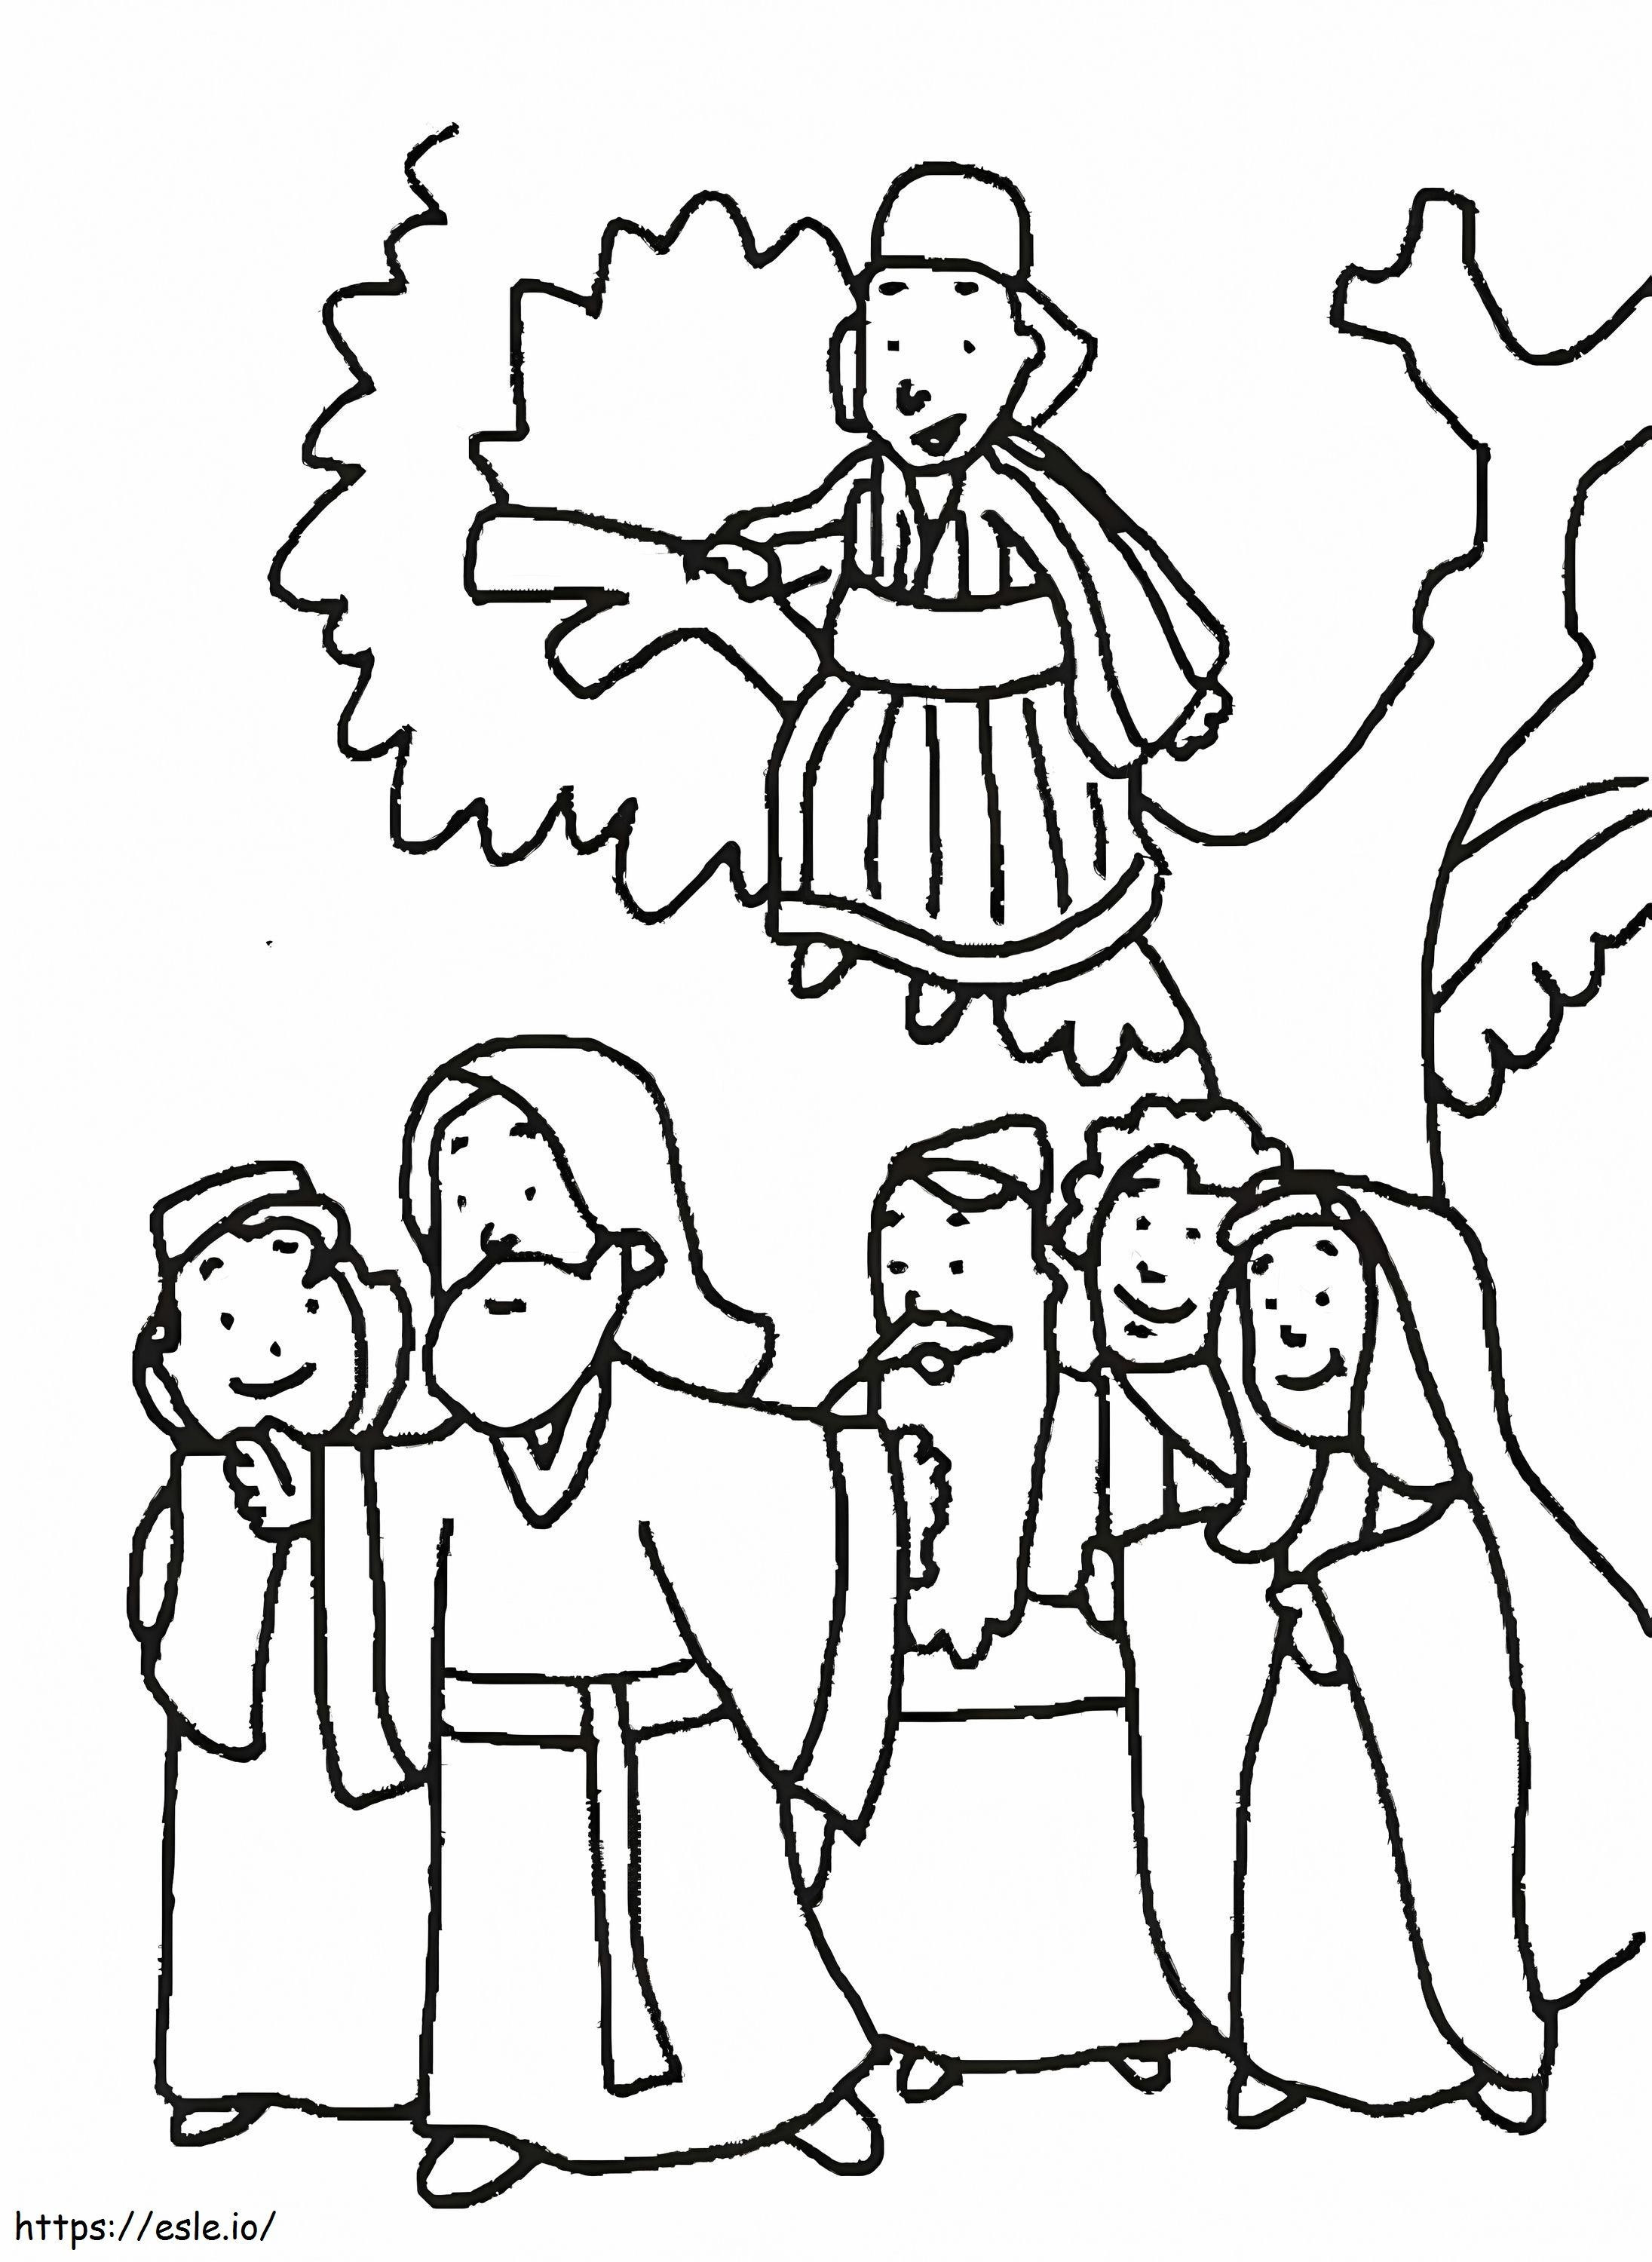 Zaqueo en árbol y dibujo de Jesús para colorear